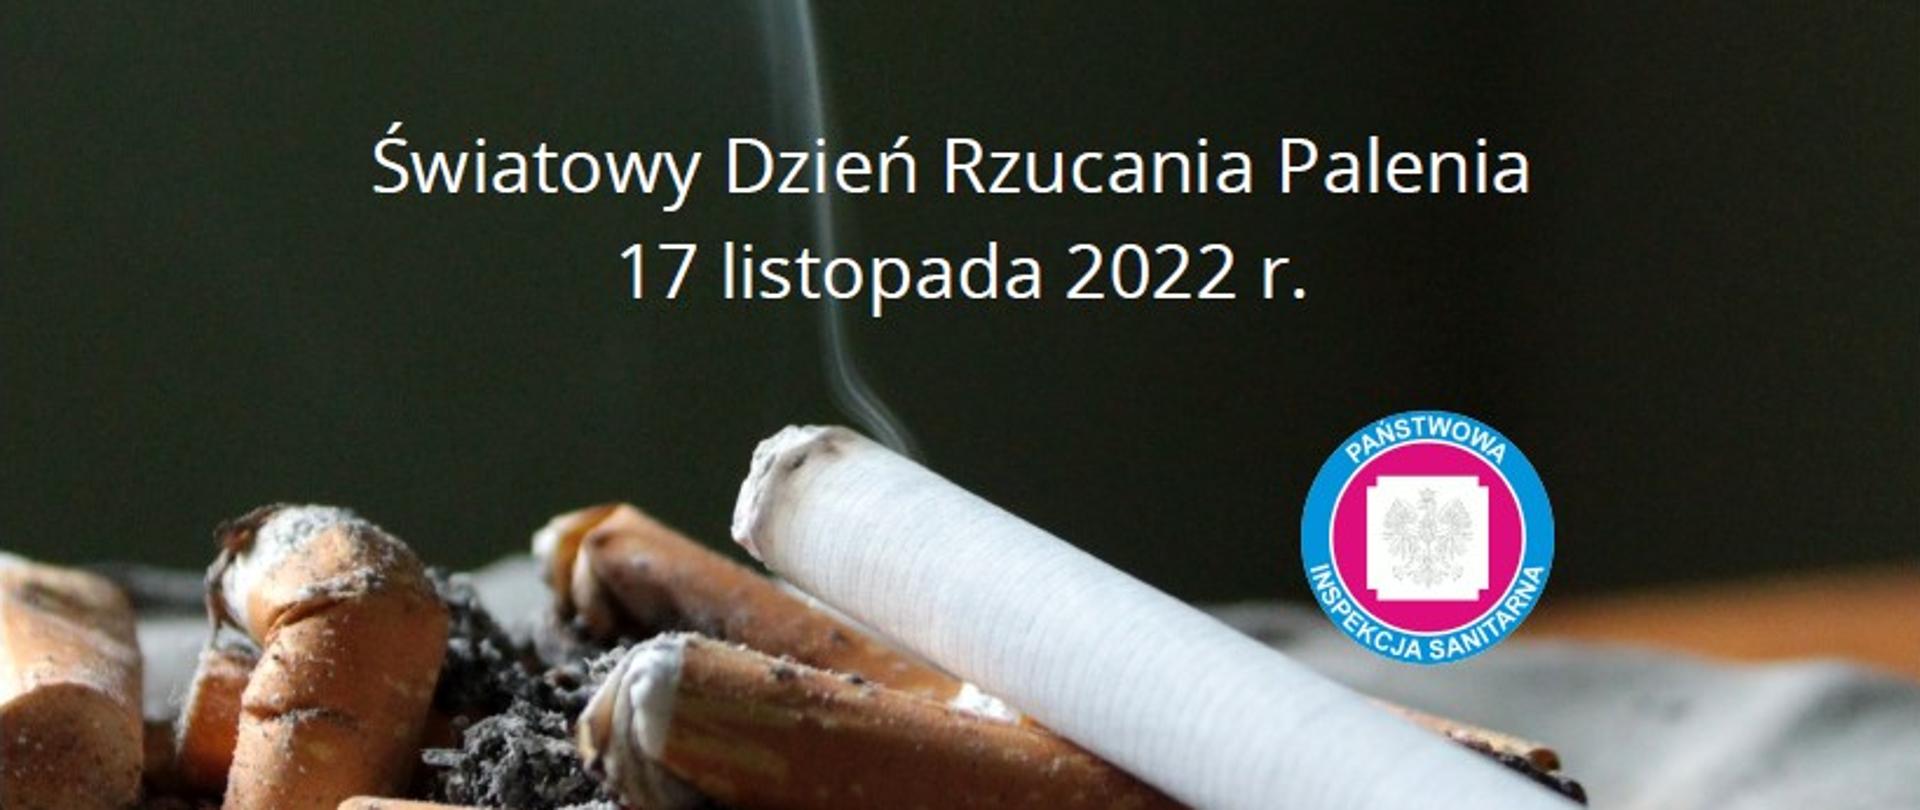 Zdjęcie przedstawia wypalone papierosy, jeden papieros się pali i leci z niego dym. Na zdjęciu znajduje się napis: Światowy Dzień Rzucania Palenia 17 listopada 2022 i logo Inspekcji Sanitarnej